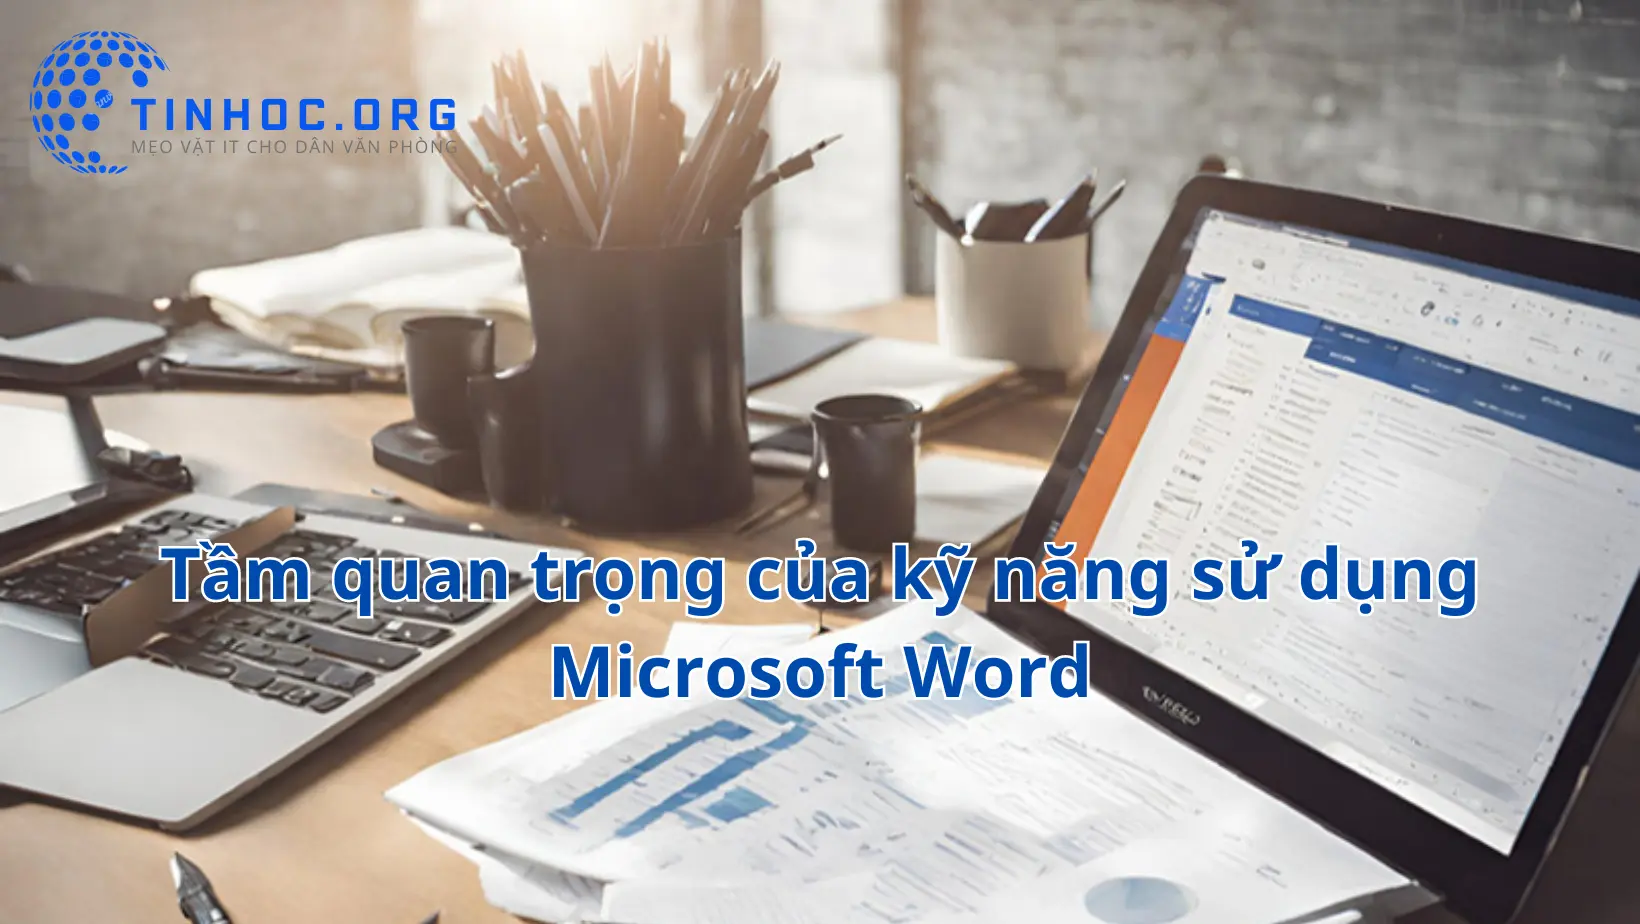 Muốn tạo ra tài liệu chuyên nghiệp và hiệu quả với Microsoft Word? Hãy nắm vững các kỹ năng cơ bản và nâng cao!